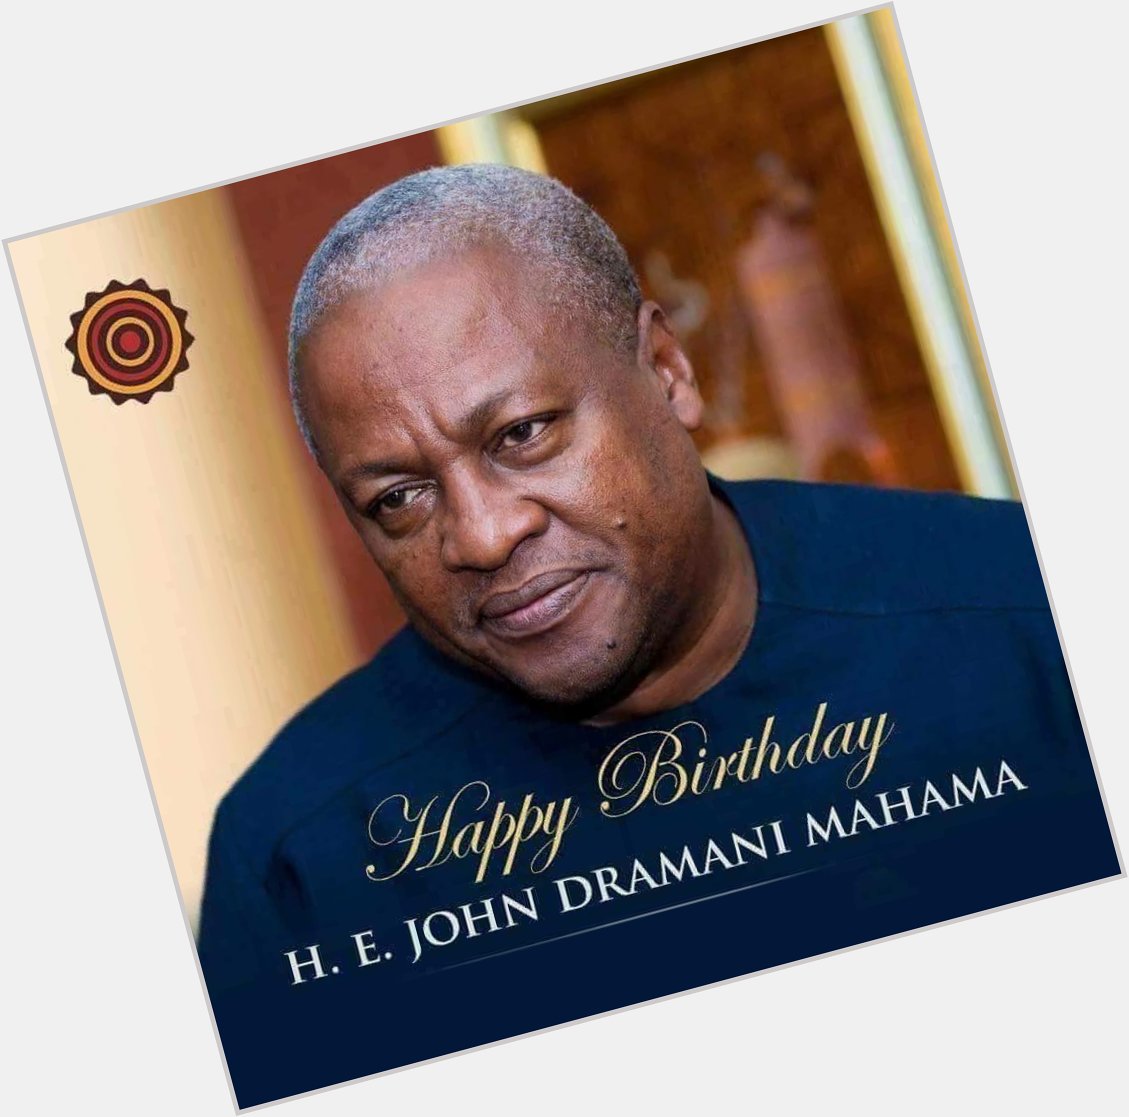 Happy birthday John Dramani Mahama. God bless you. 